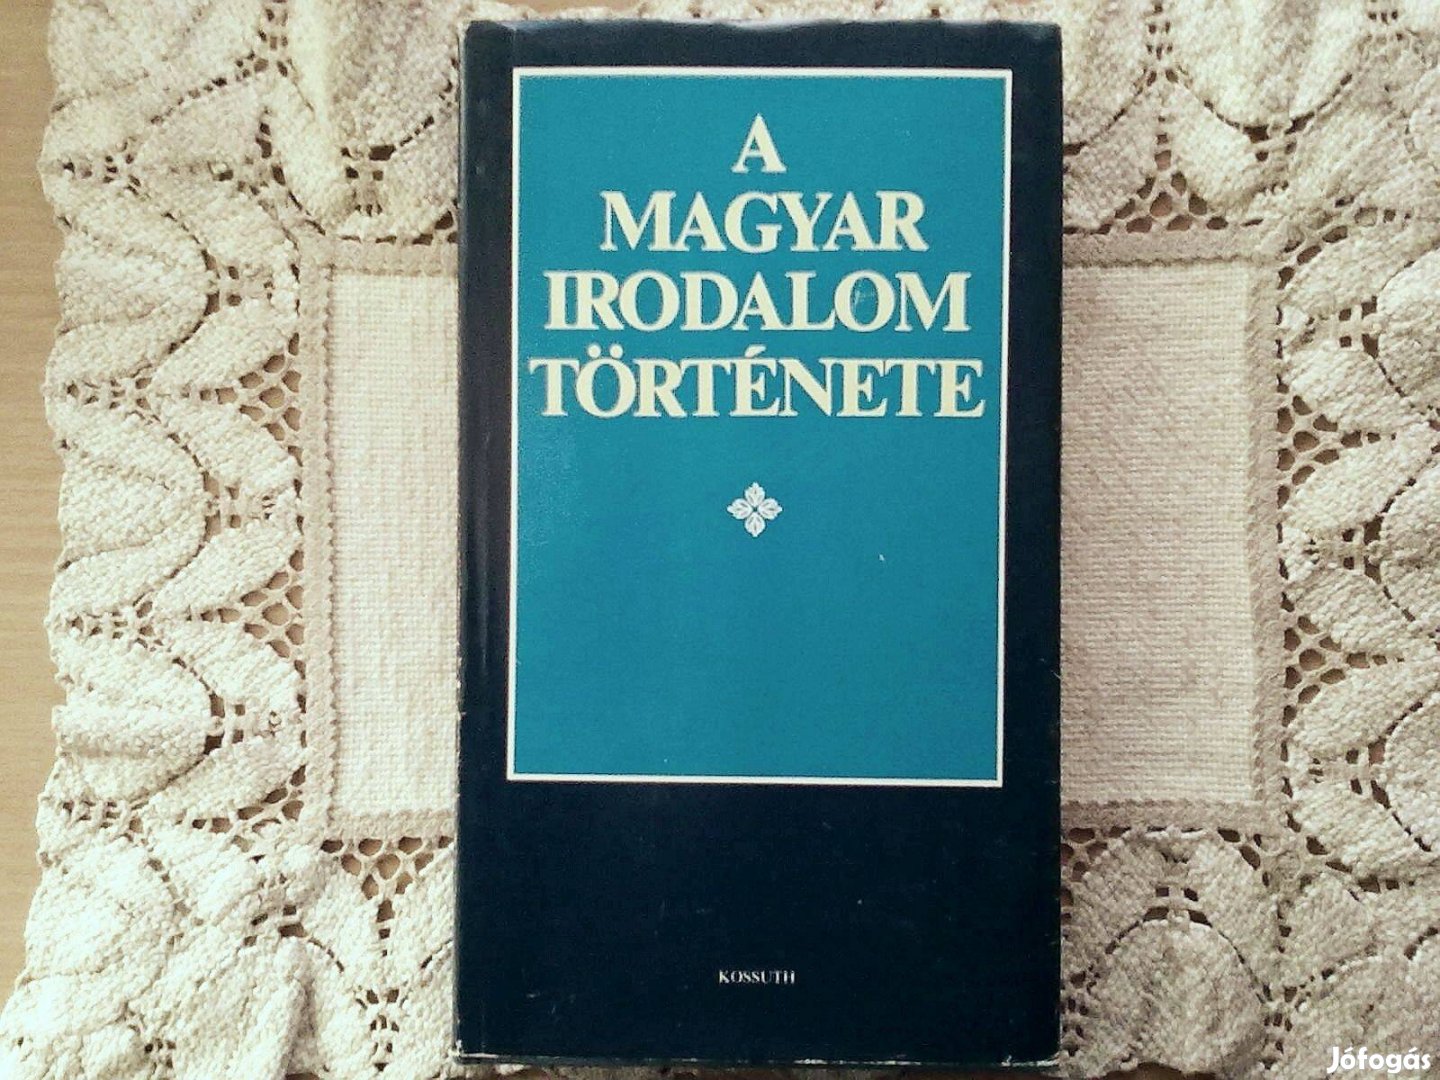 A magyar irodalom története